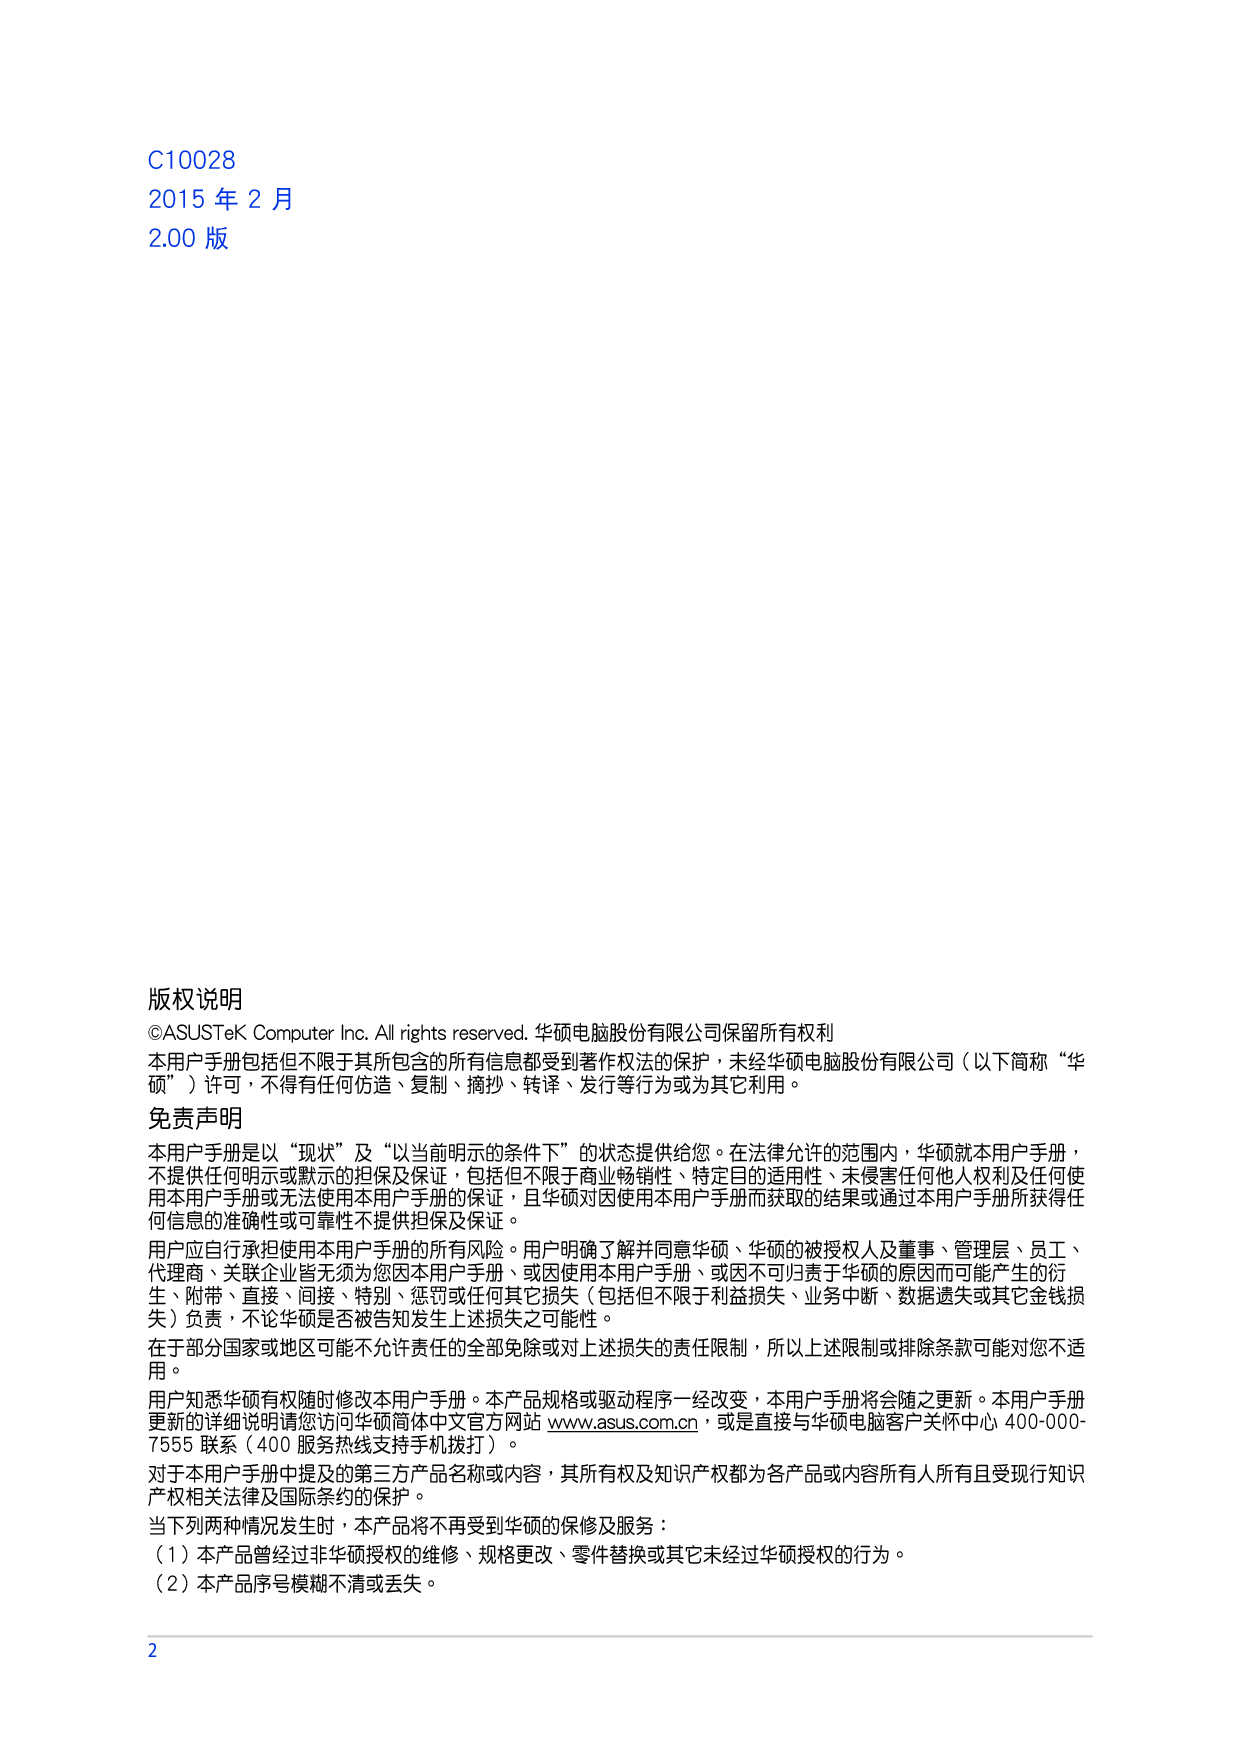 华硕 Asus ZenFone 2 Deluxe Special Edition, Zenfone 2 Deluxe ZE550ML 使用手册 第1页